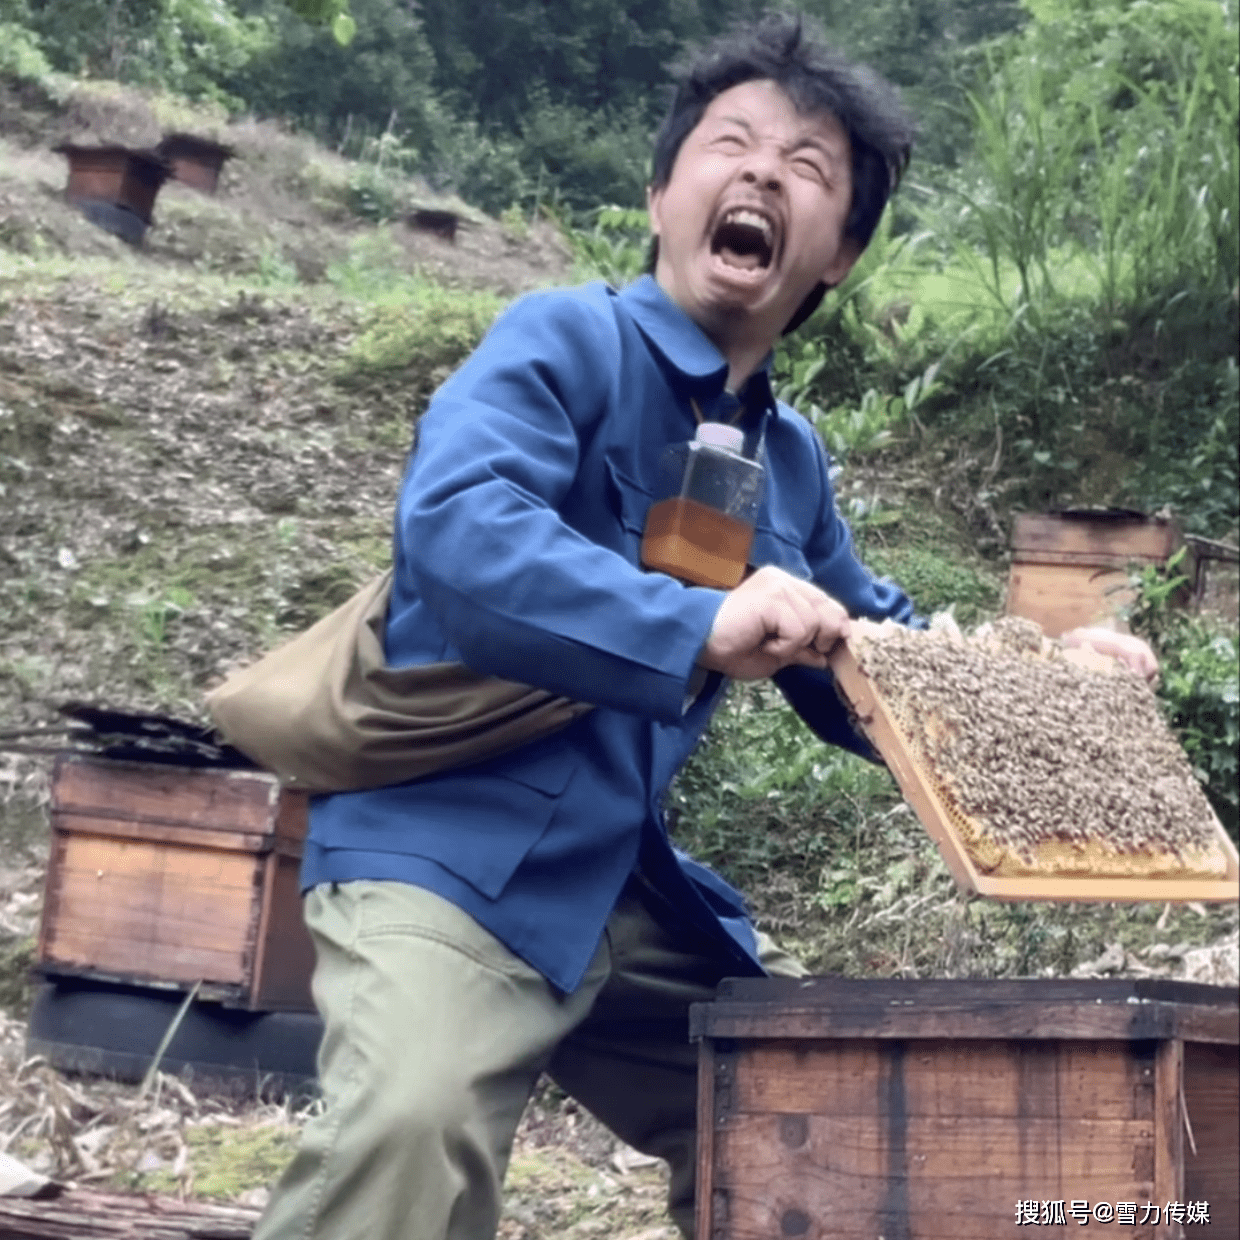 养蜂人阿明是怎样获得成功的